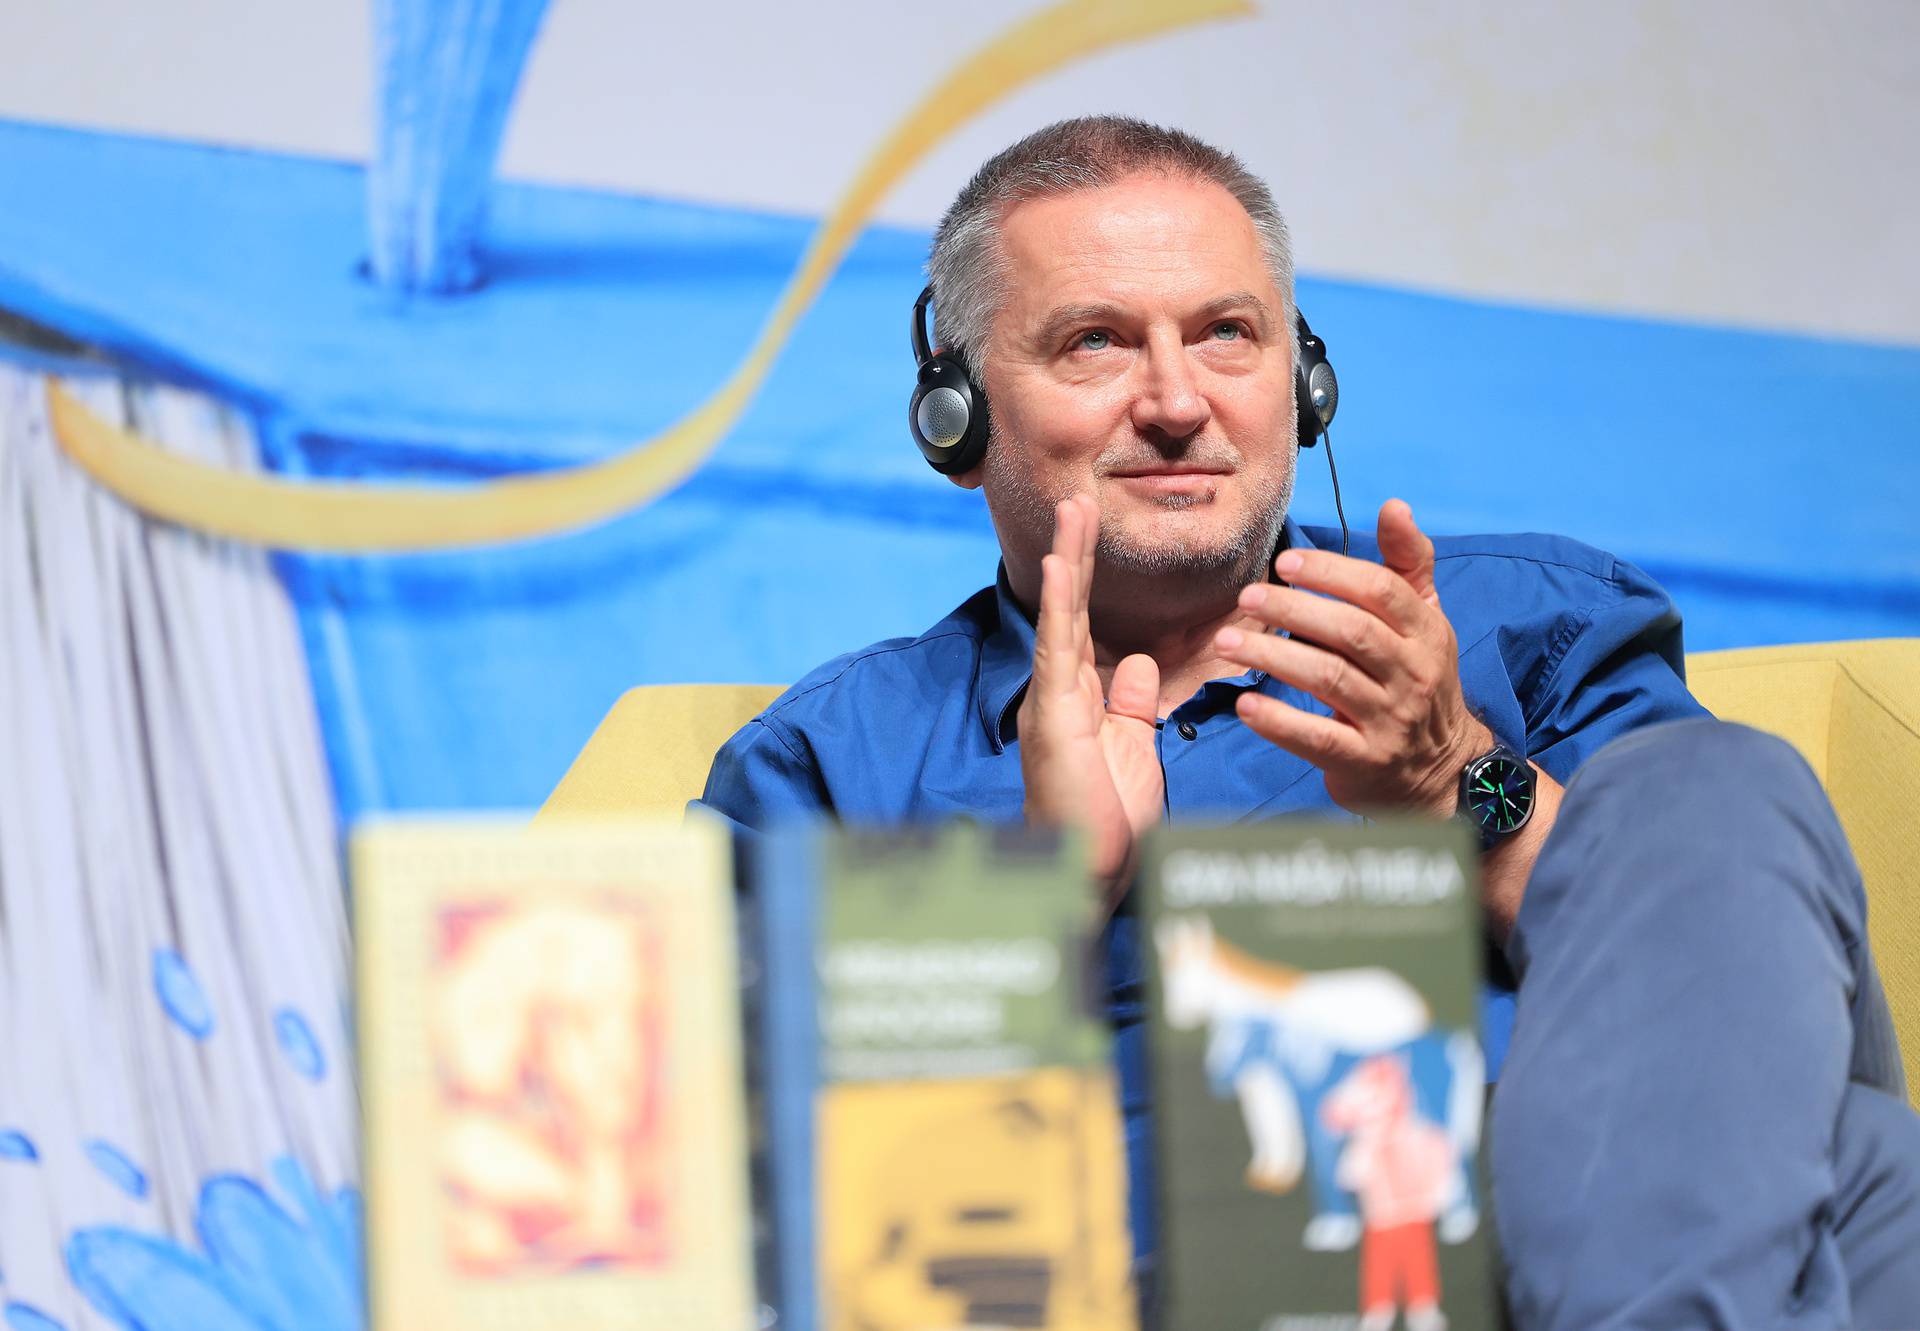 Zagreb: Georgi Gospodinov  gostovao na tribini Festivala svjetske književnosti "Razotkrivanje" 